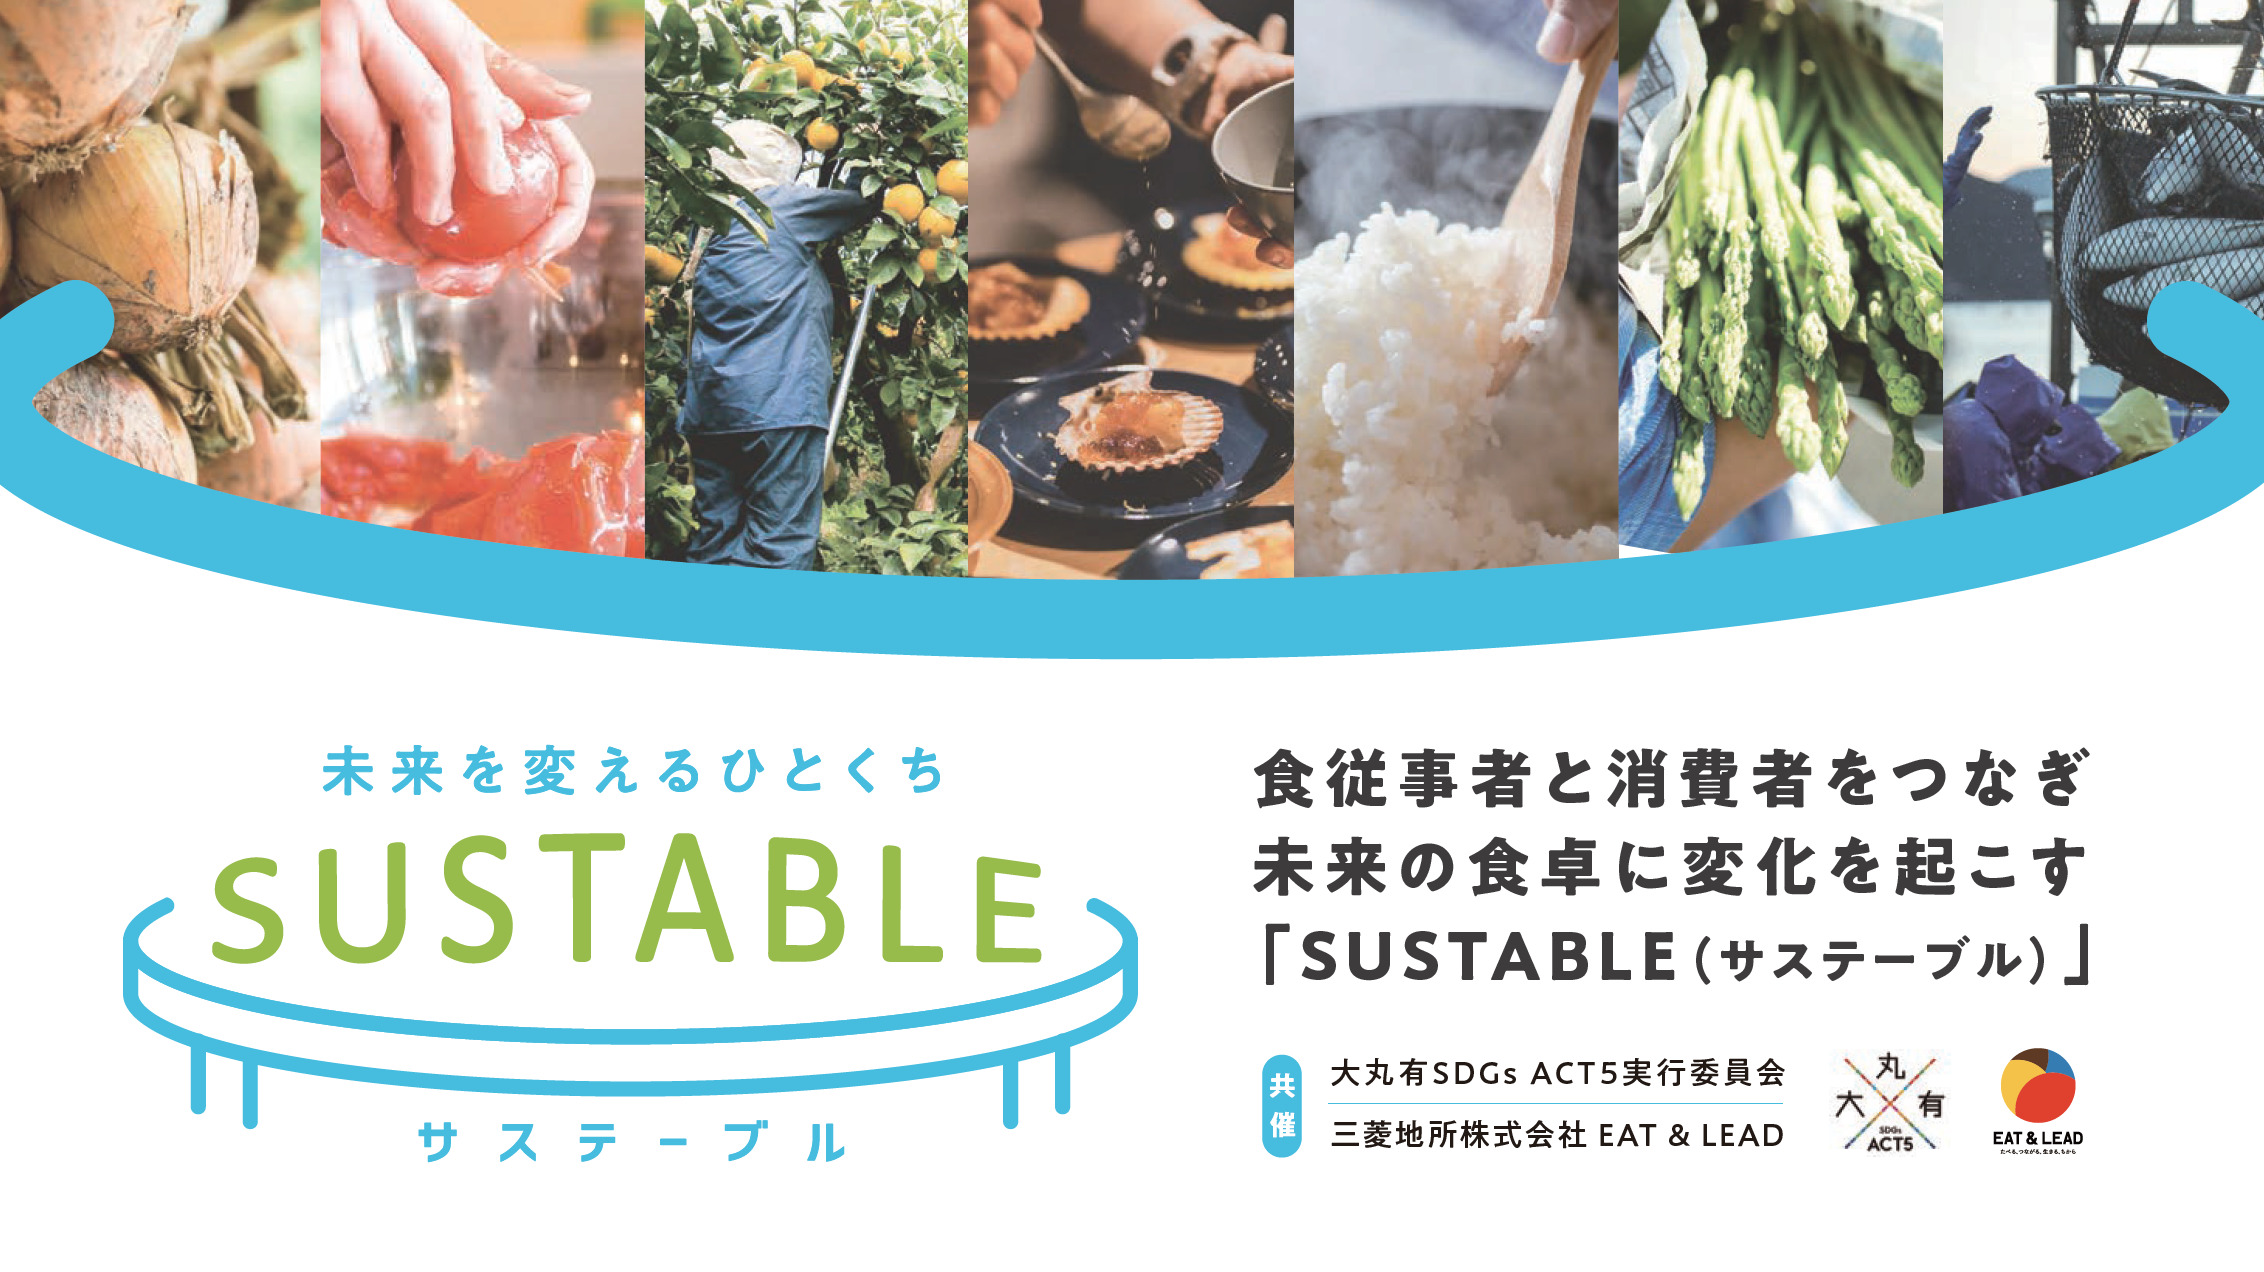 三菱地所等が推進するプロジェクト「大丸有SDGs ACT5」にてイベント参加者に向け、「KURADASHI」クーポンを配布のサブ画像2